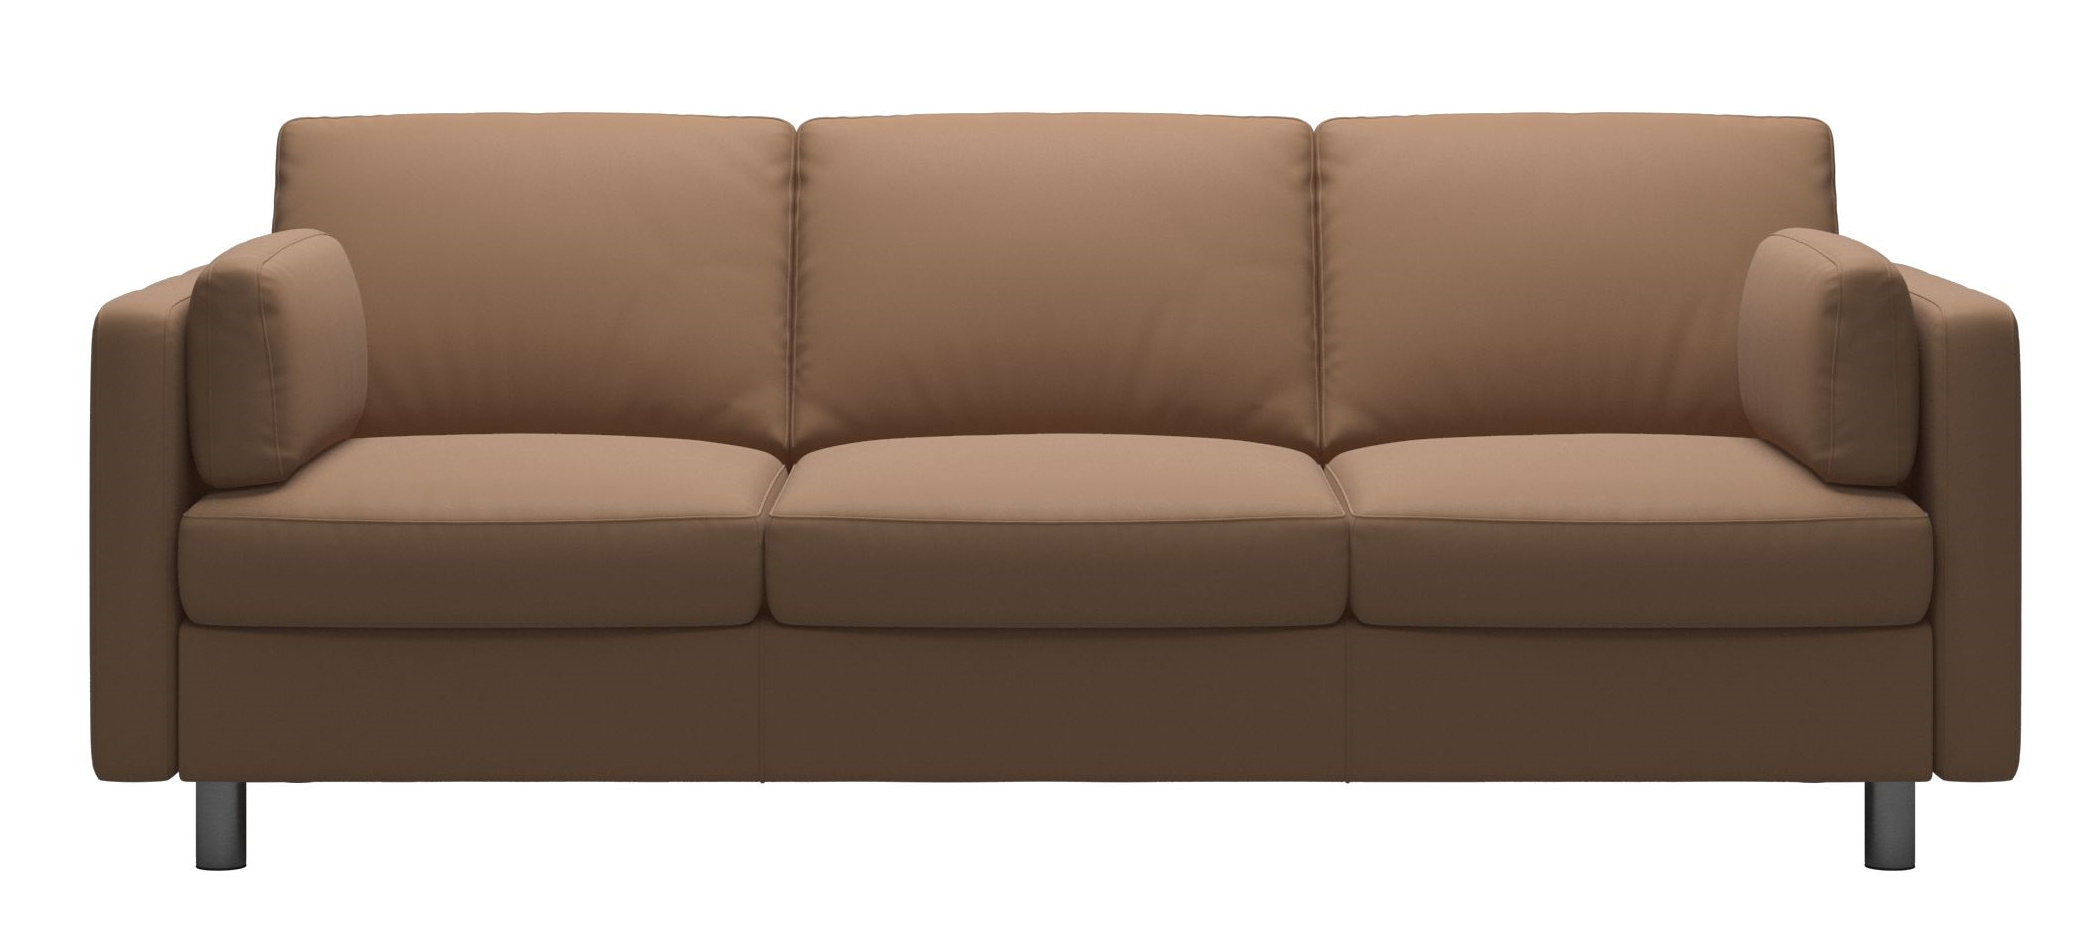 Canapea cu 3 locuri Stressless Emma E600 Classic picioare metalice 11cm piele Batik Latte sensodays.ro imagine model 2022